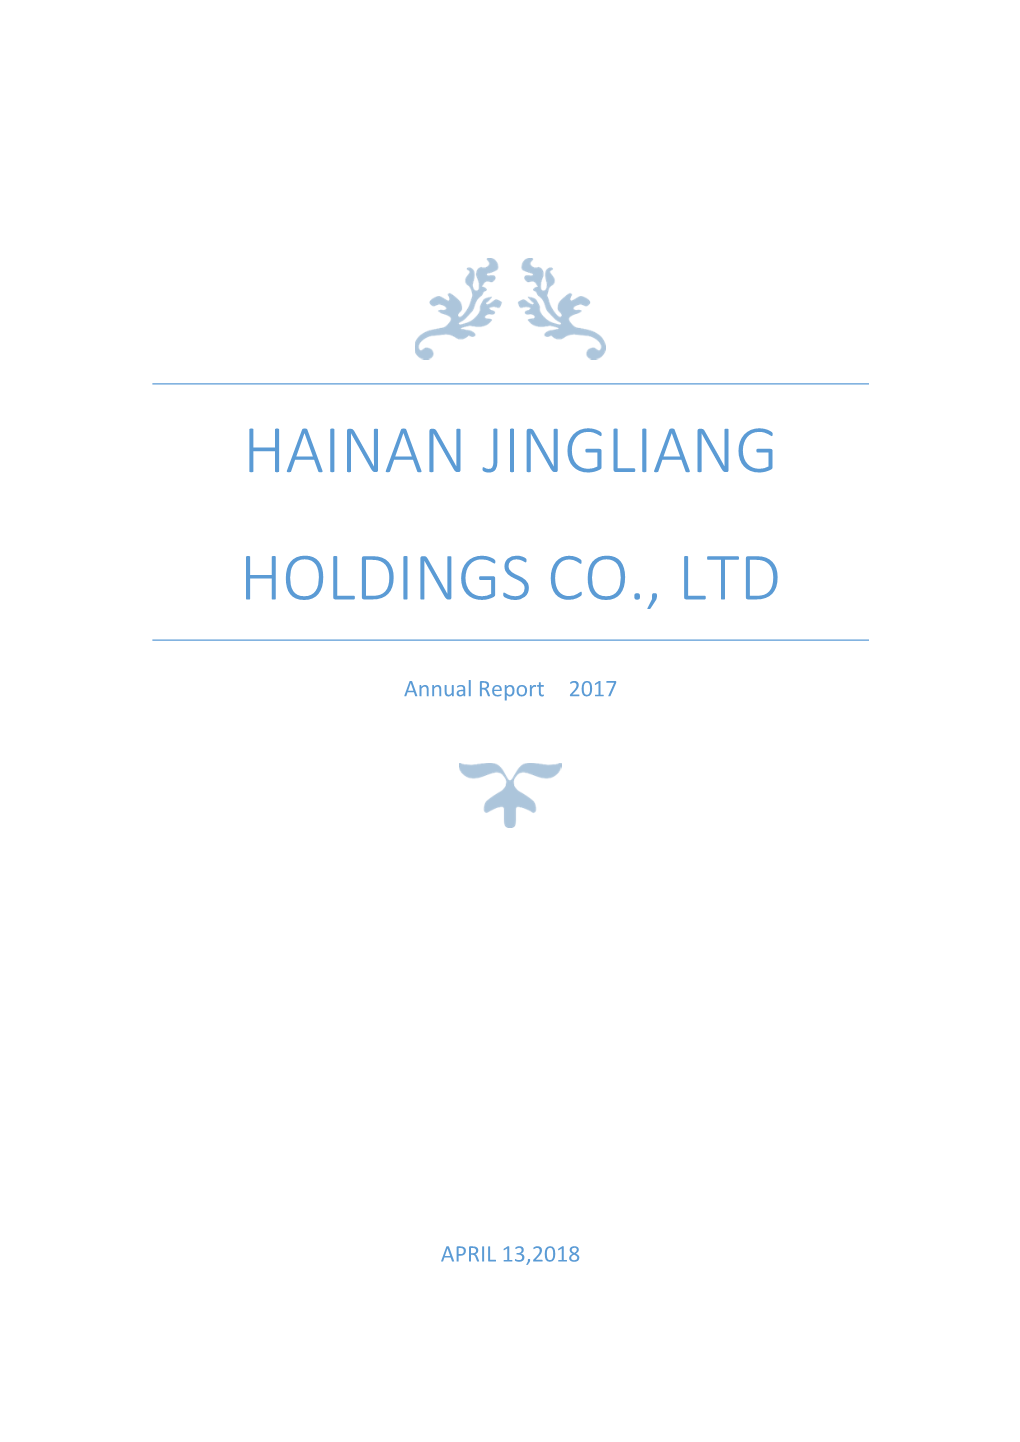 Hainan Jingliang Holdings Co., Ltd